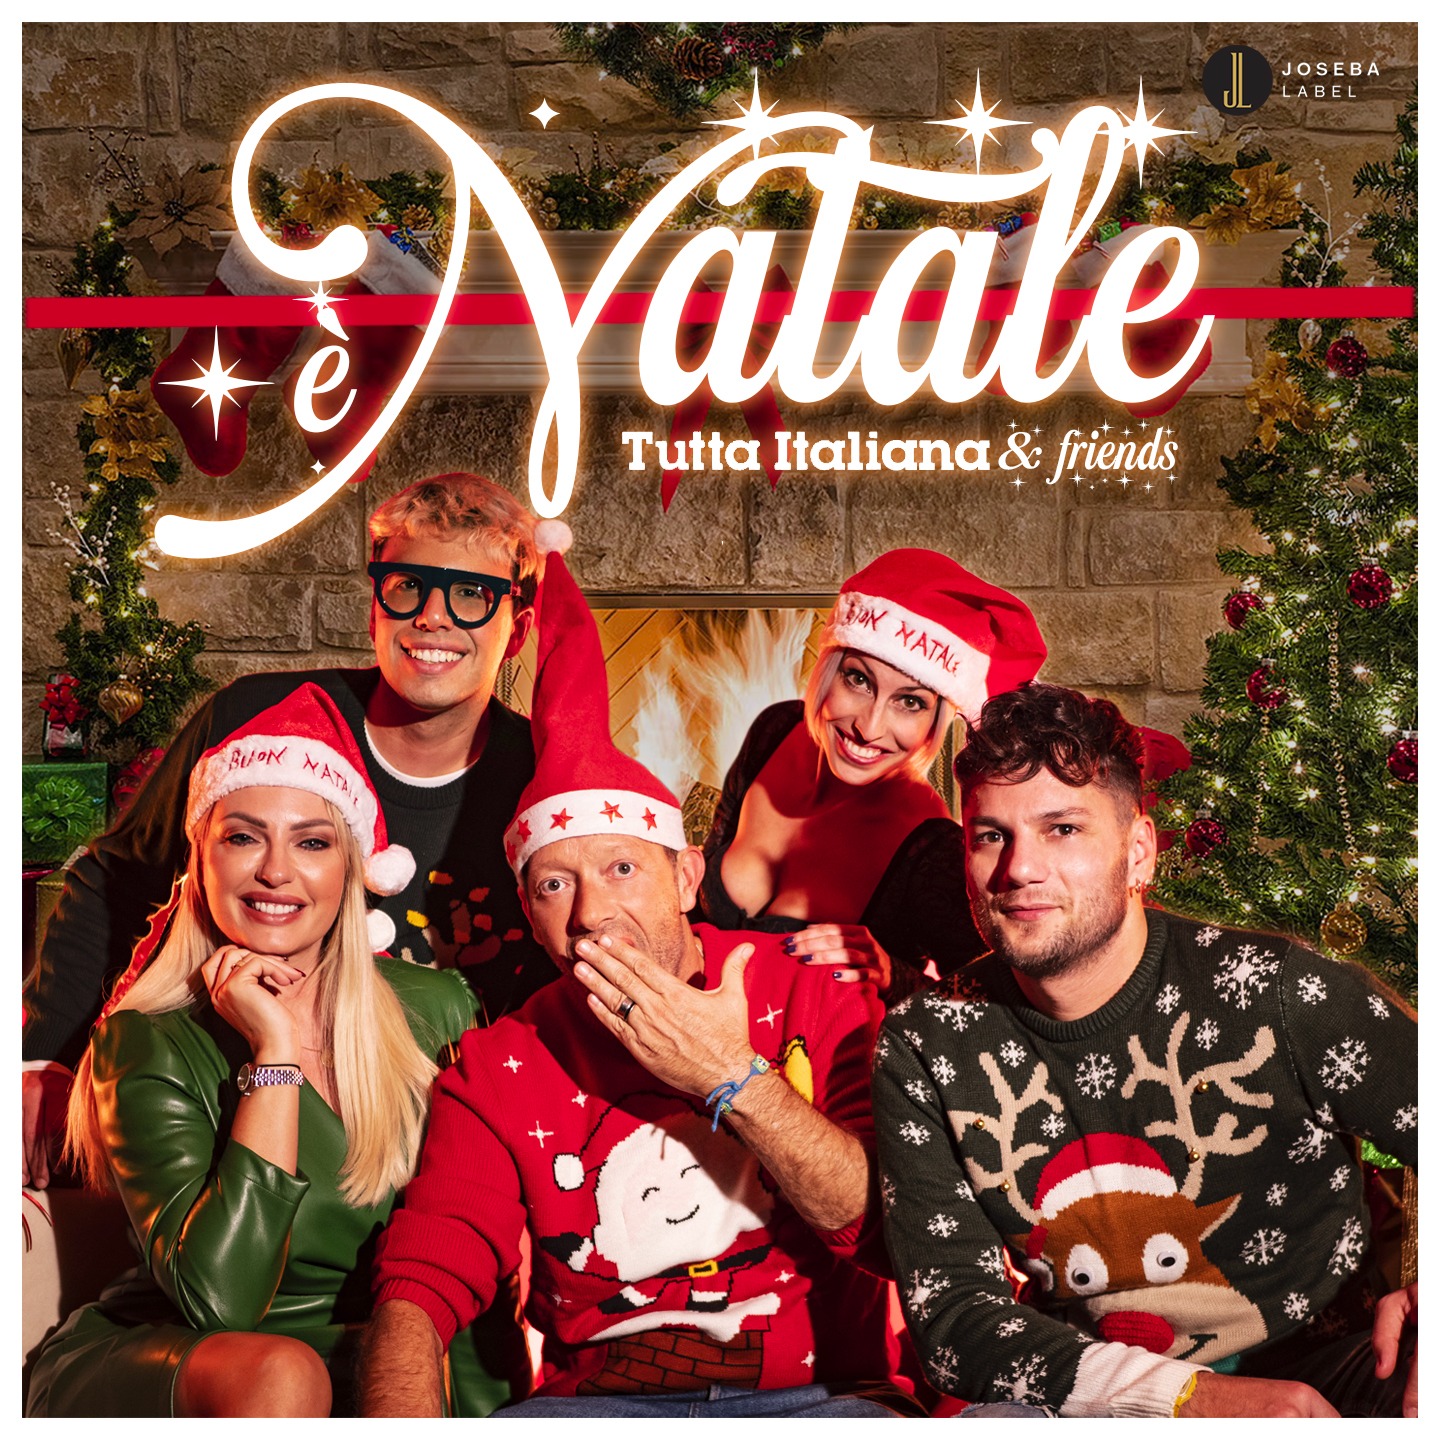 “È NATALE”: esce la nuova canzone natalizia di Tutta Italiana & Friends feat. Luca Napolitano e Giovanni Segreti Bruno